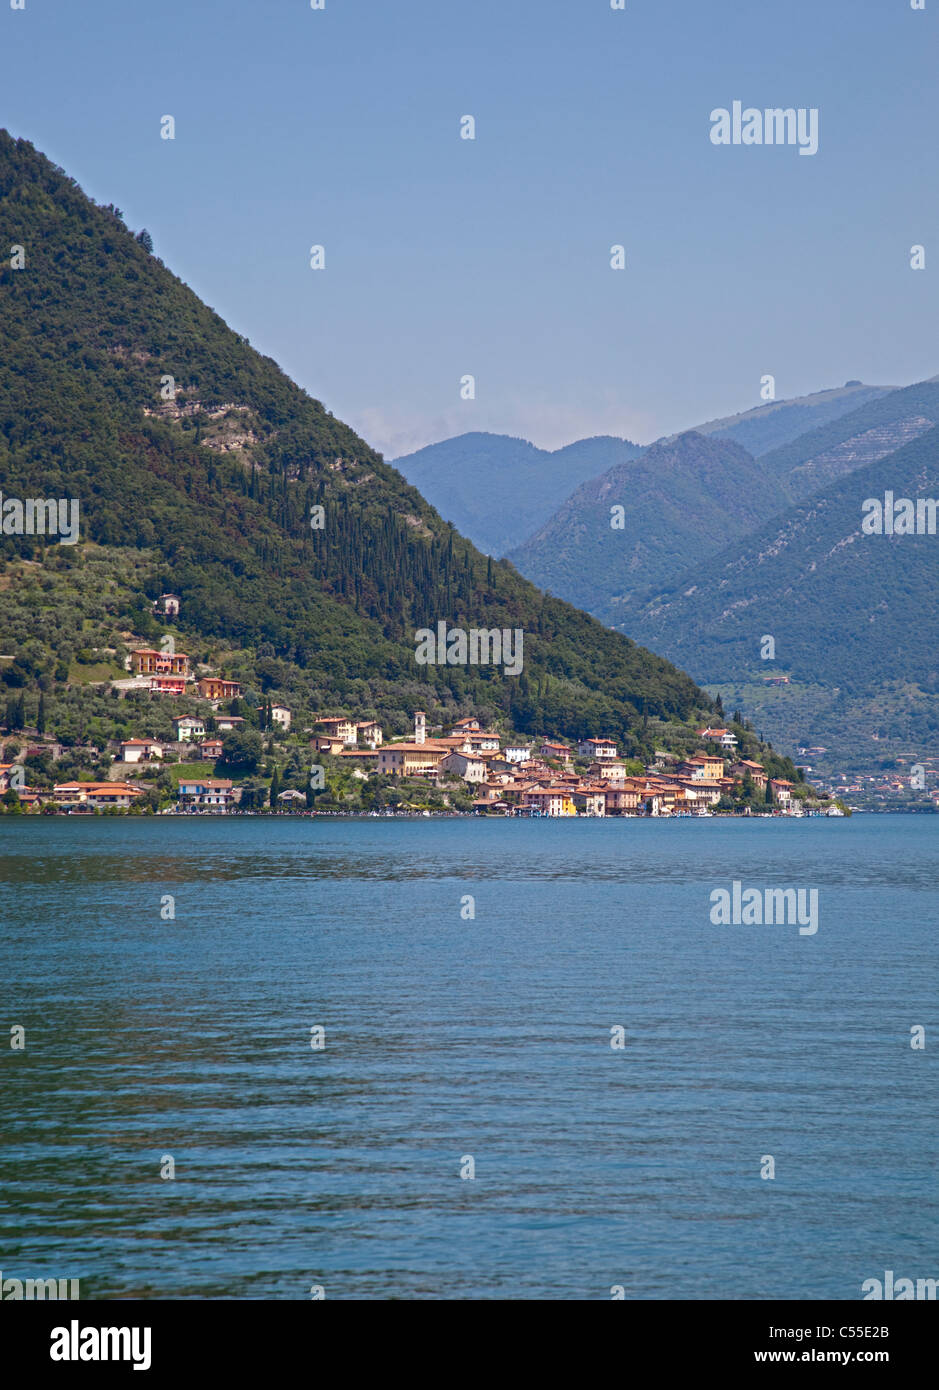 Isola Monte, Lake Iseo, Italy Stock Photo